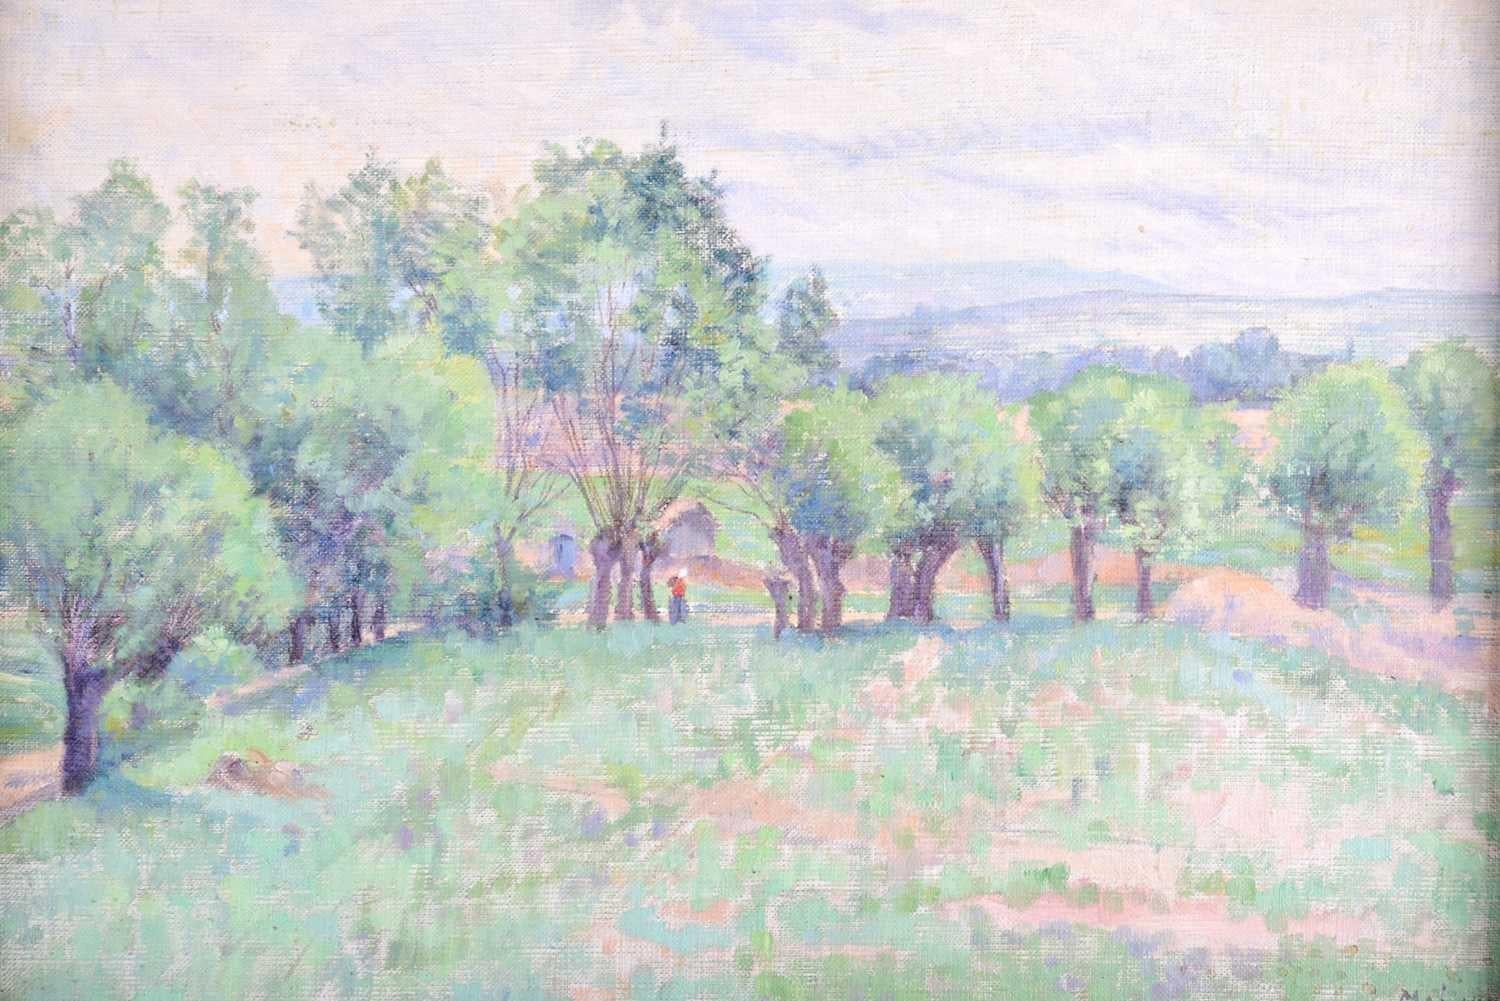 Peinture à l'huile impressionniste française des années 1890, Lady Walking Country Landscape Fields - Painting de (follower of) Camille Pissarro